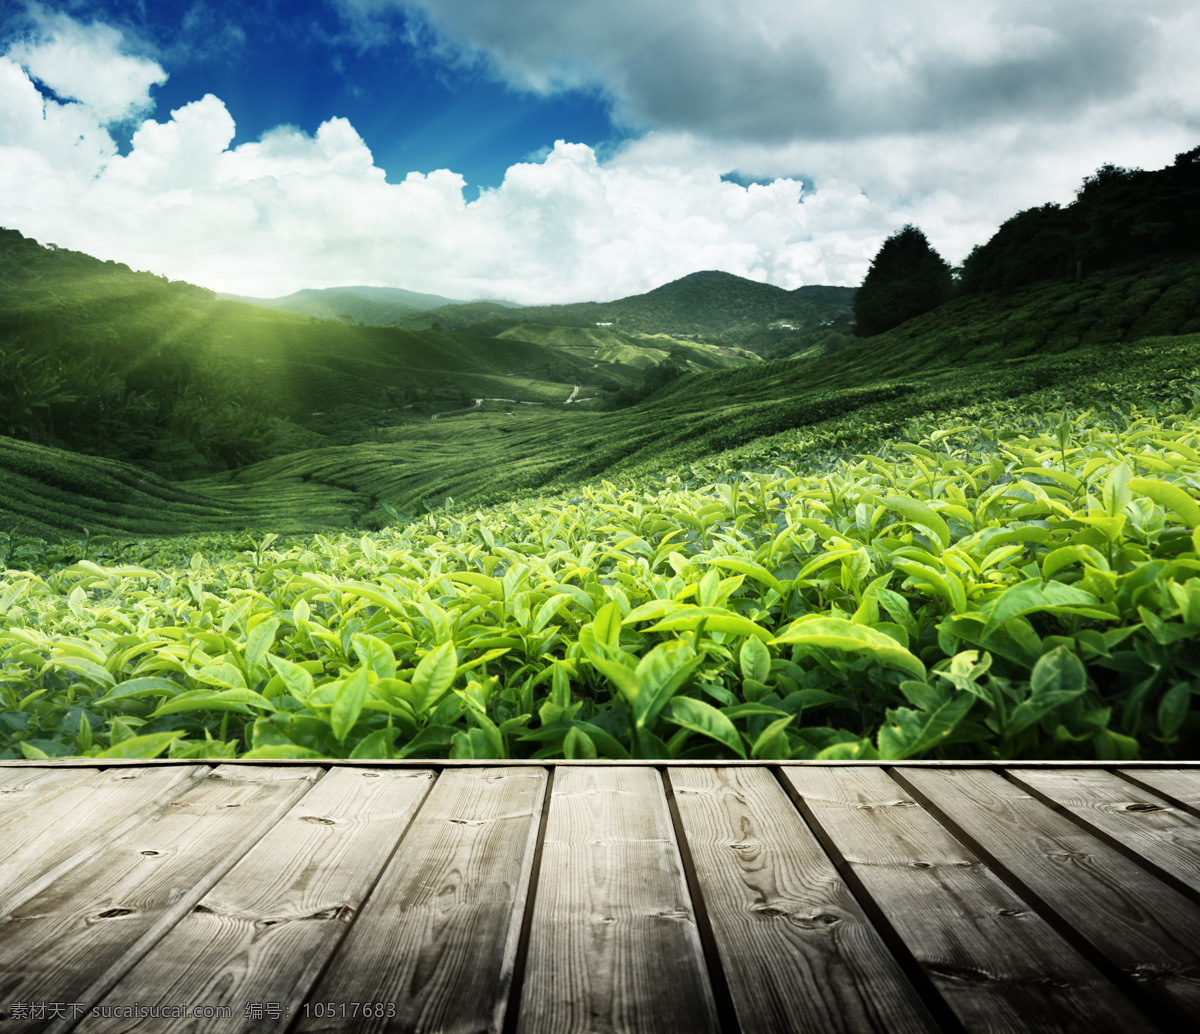 唯美 茶叶 种植园 高清 茶叶广告图片 茶园 春茶 绿茶 木板 山脉 山丘 自然美景 盆地 风景 生活 旅游餐饮